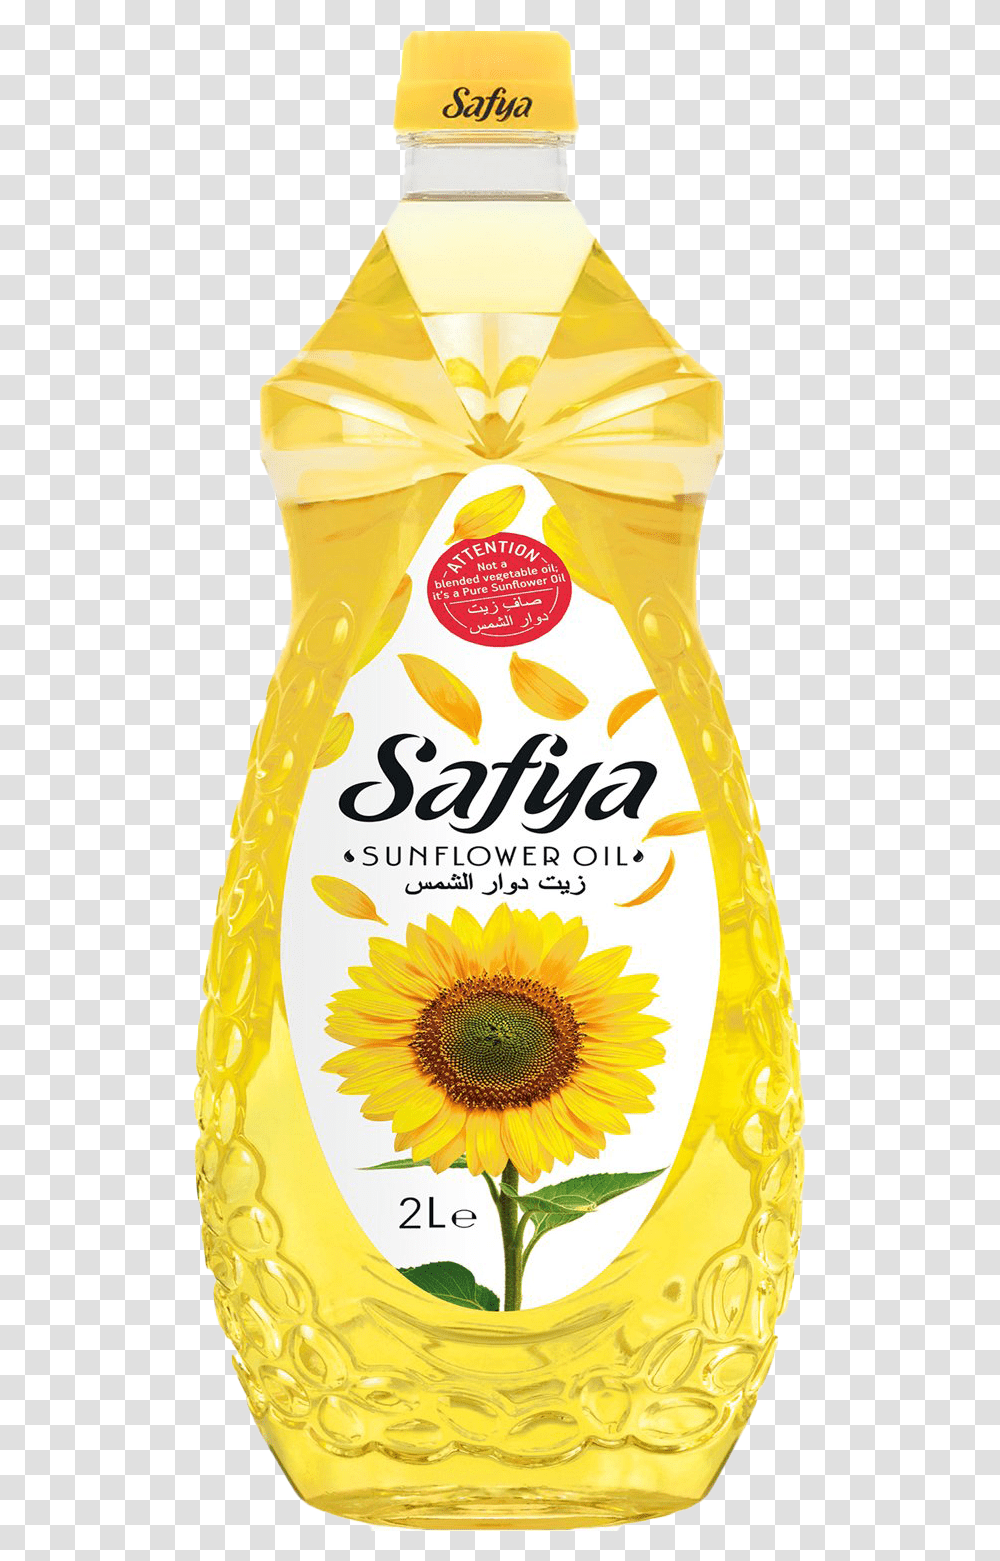 Sunflower Oil Background Bottle, Juice, Beverage, Plant, Blossom Transparent Png